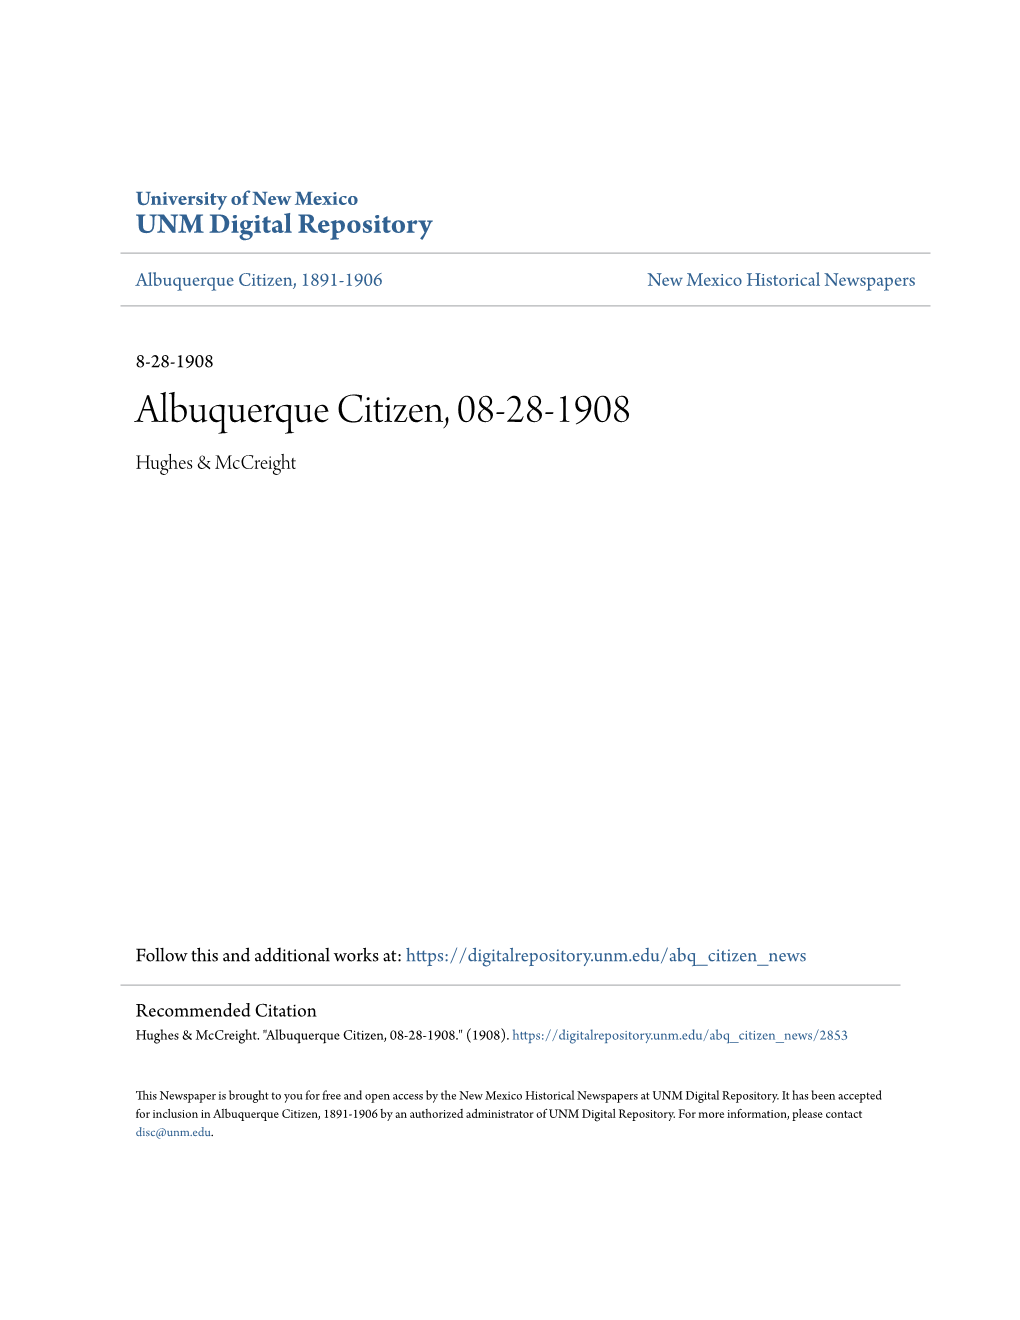 Albuquerque Citizen, 08-28-1908 Hughes & Mccreight